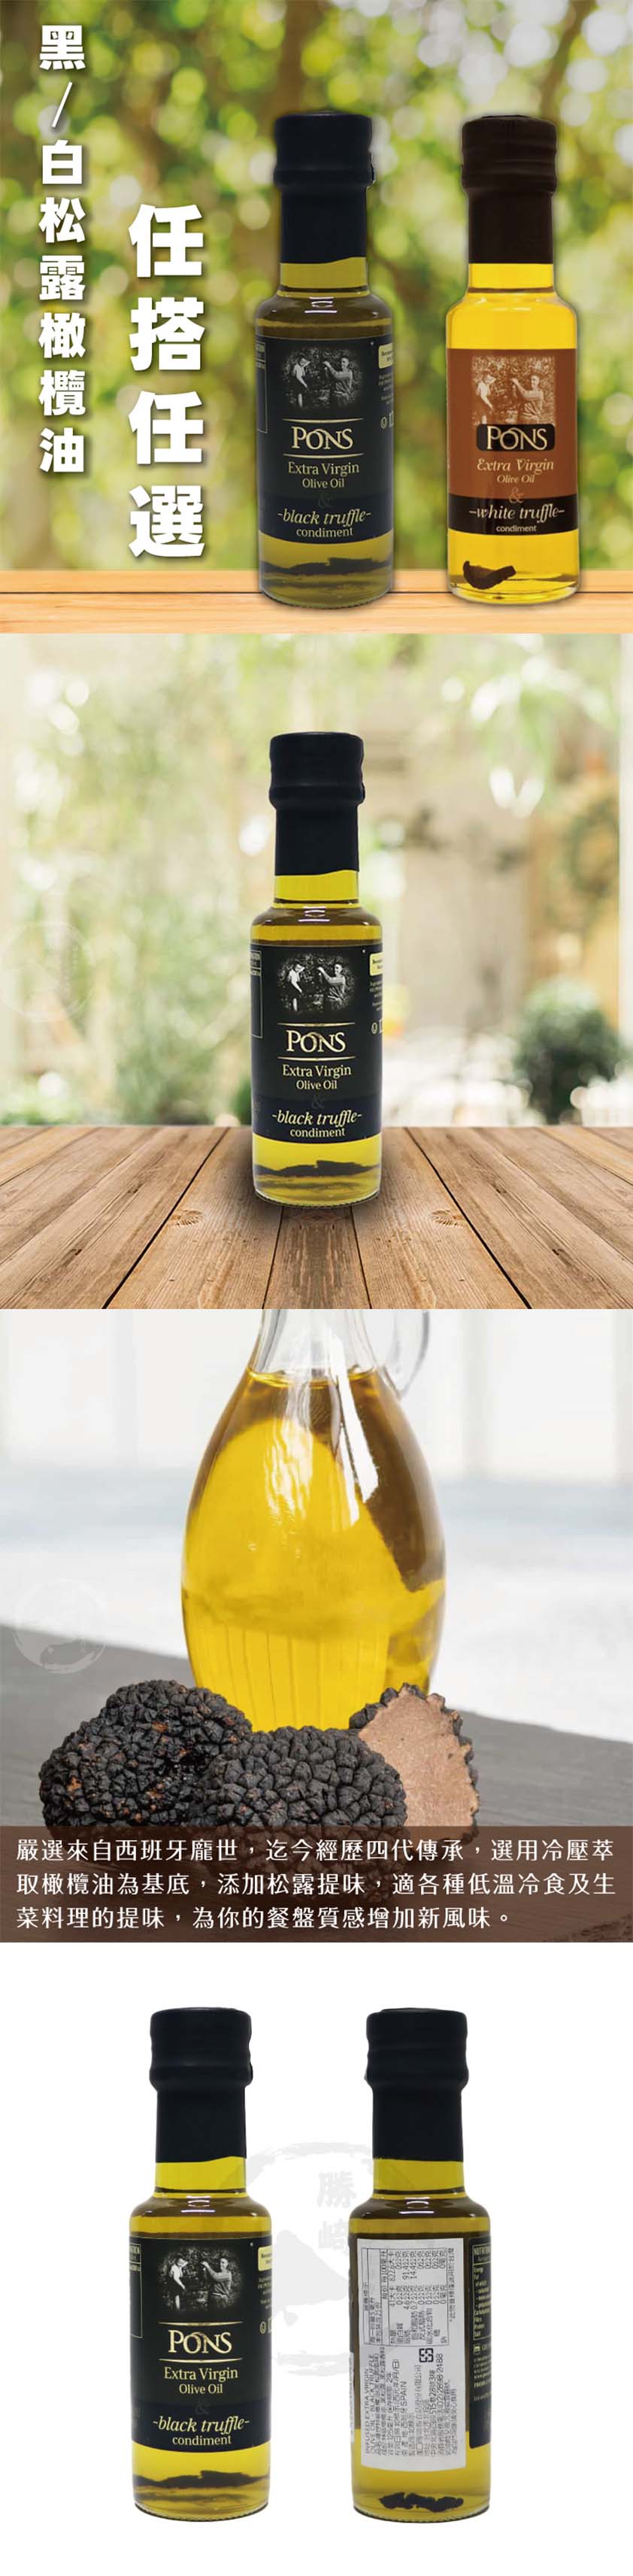 【龐世PONS】松露風味橄欖油125ml任選 (白松露橄欖油/黑松露橄欖油)